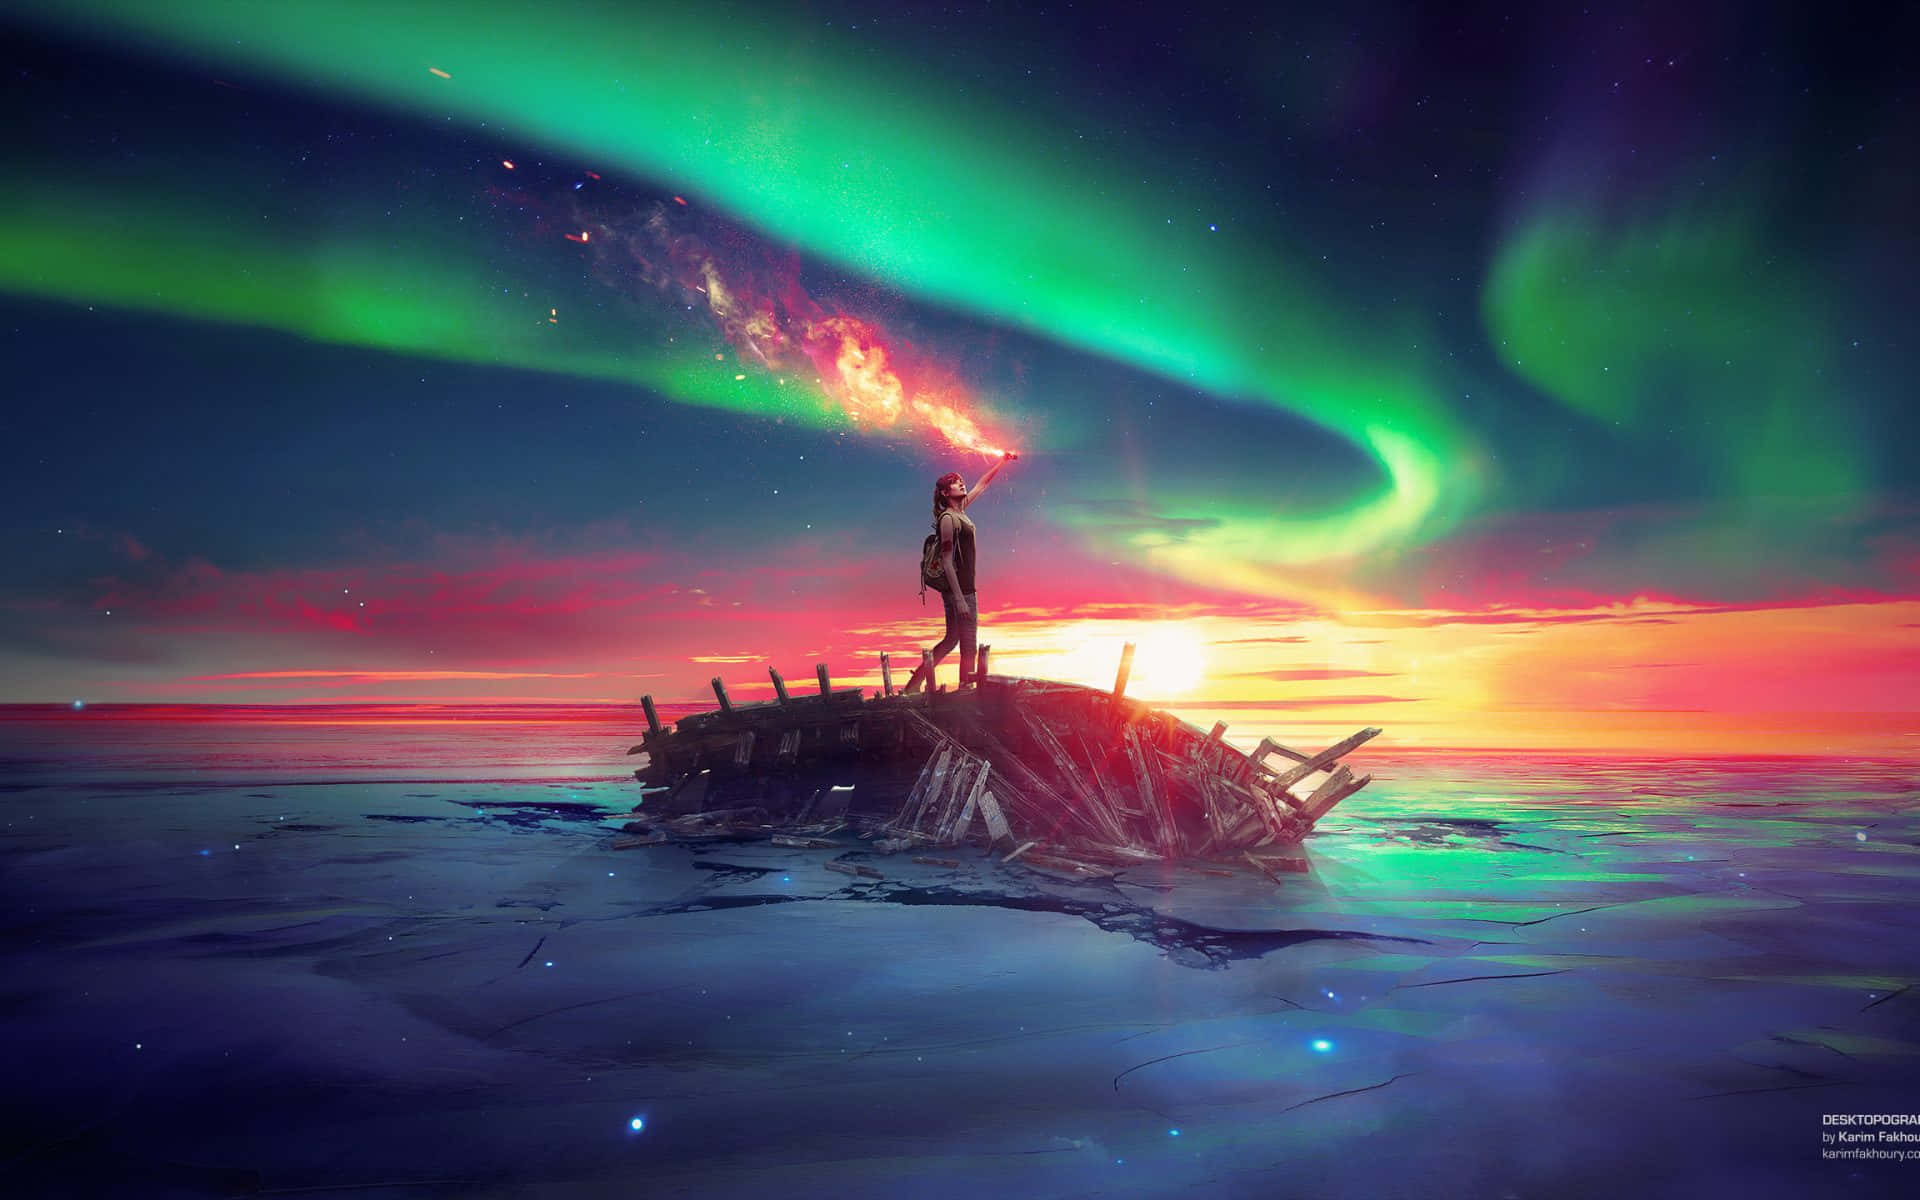 Eineperson Steht Auf Einem Boot Mit Nordlicht Im Hintergrund. Wallpaper